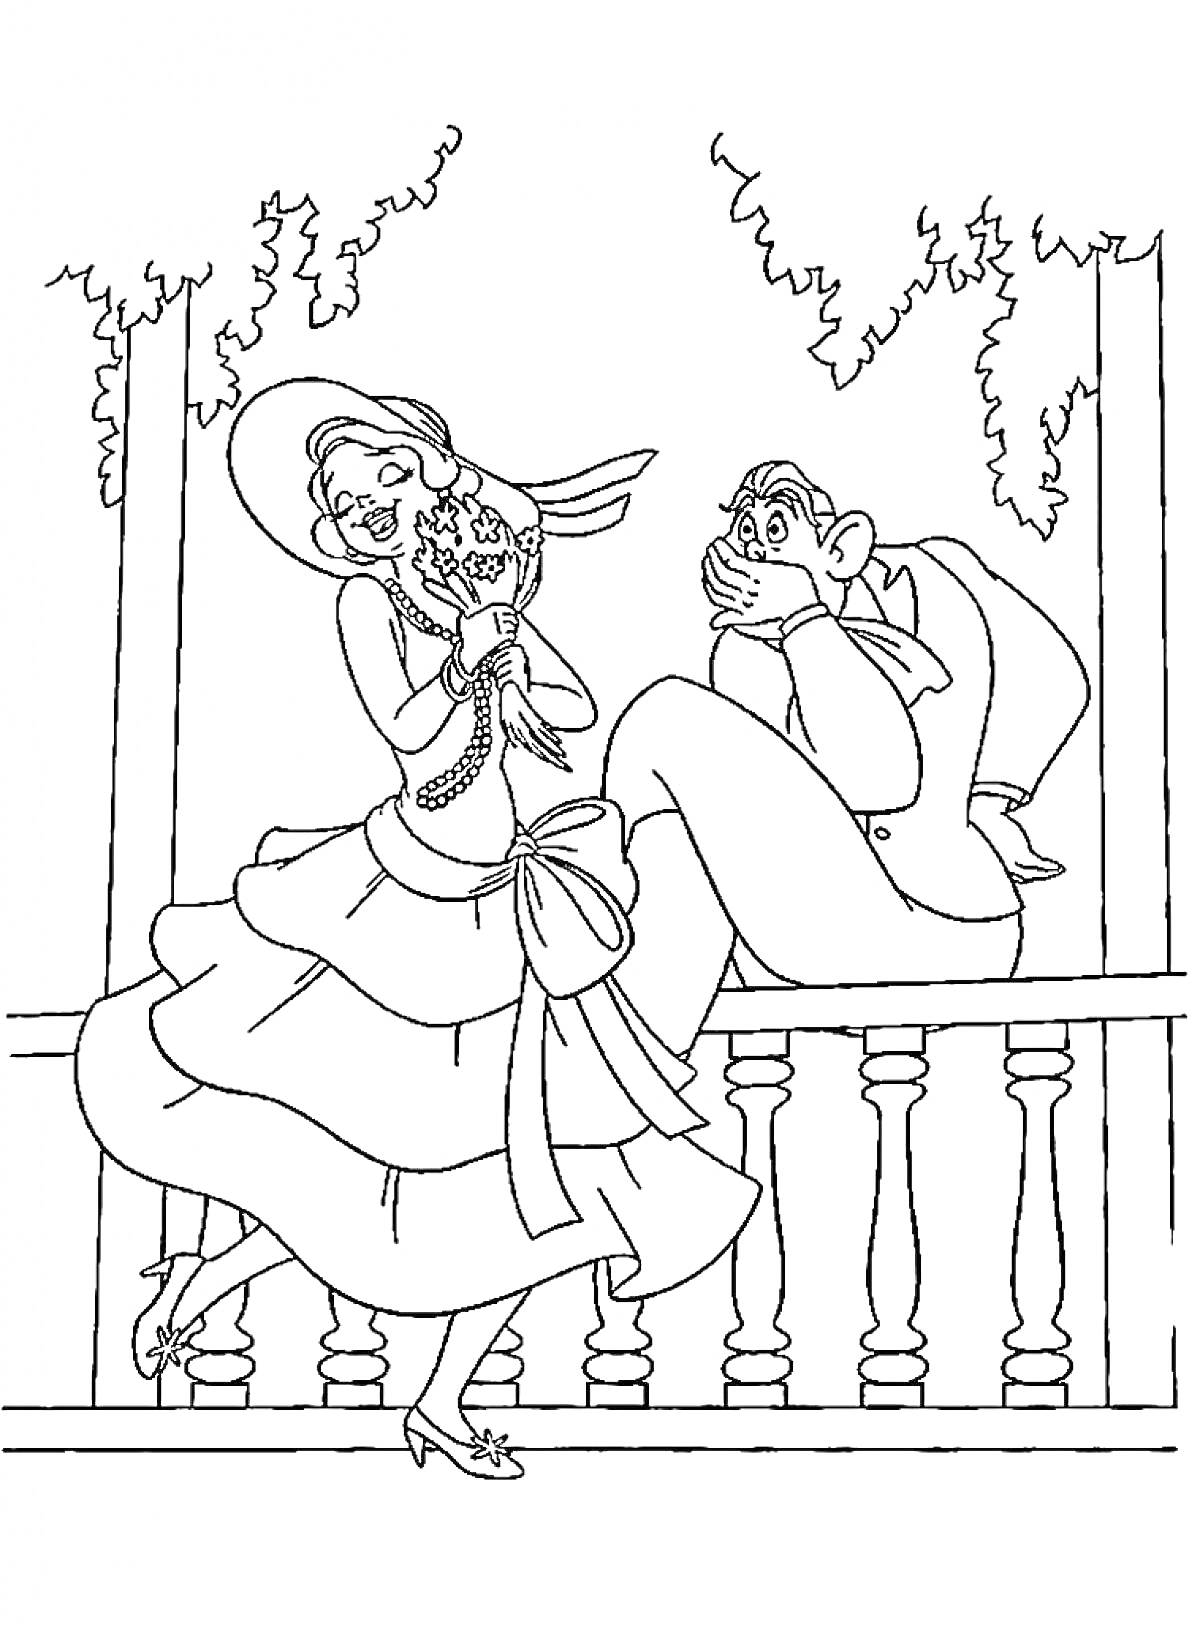 Принцесса на балконе с лягушкой и удивлённый мужчина позади